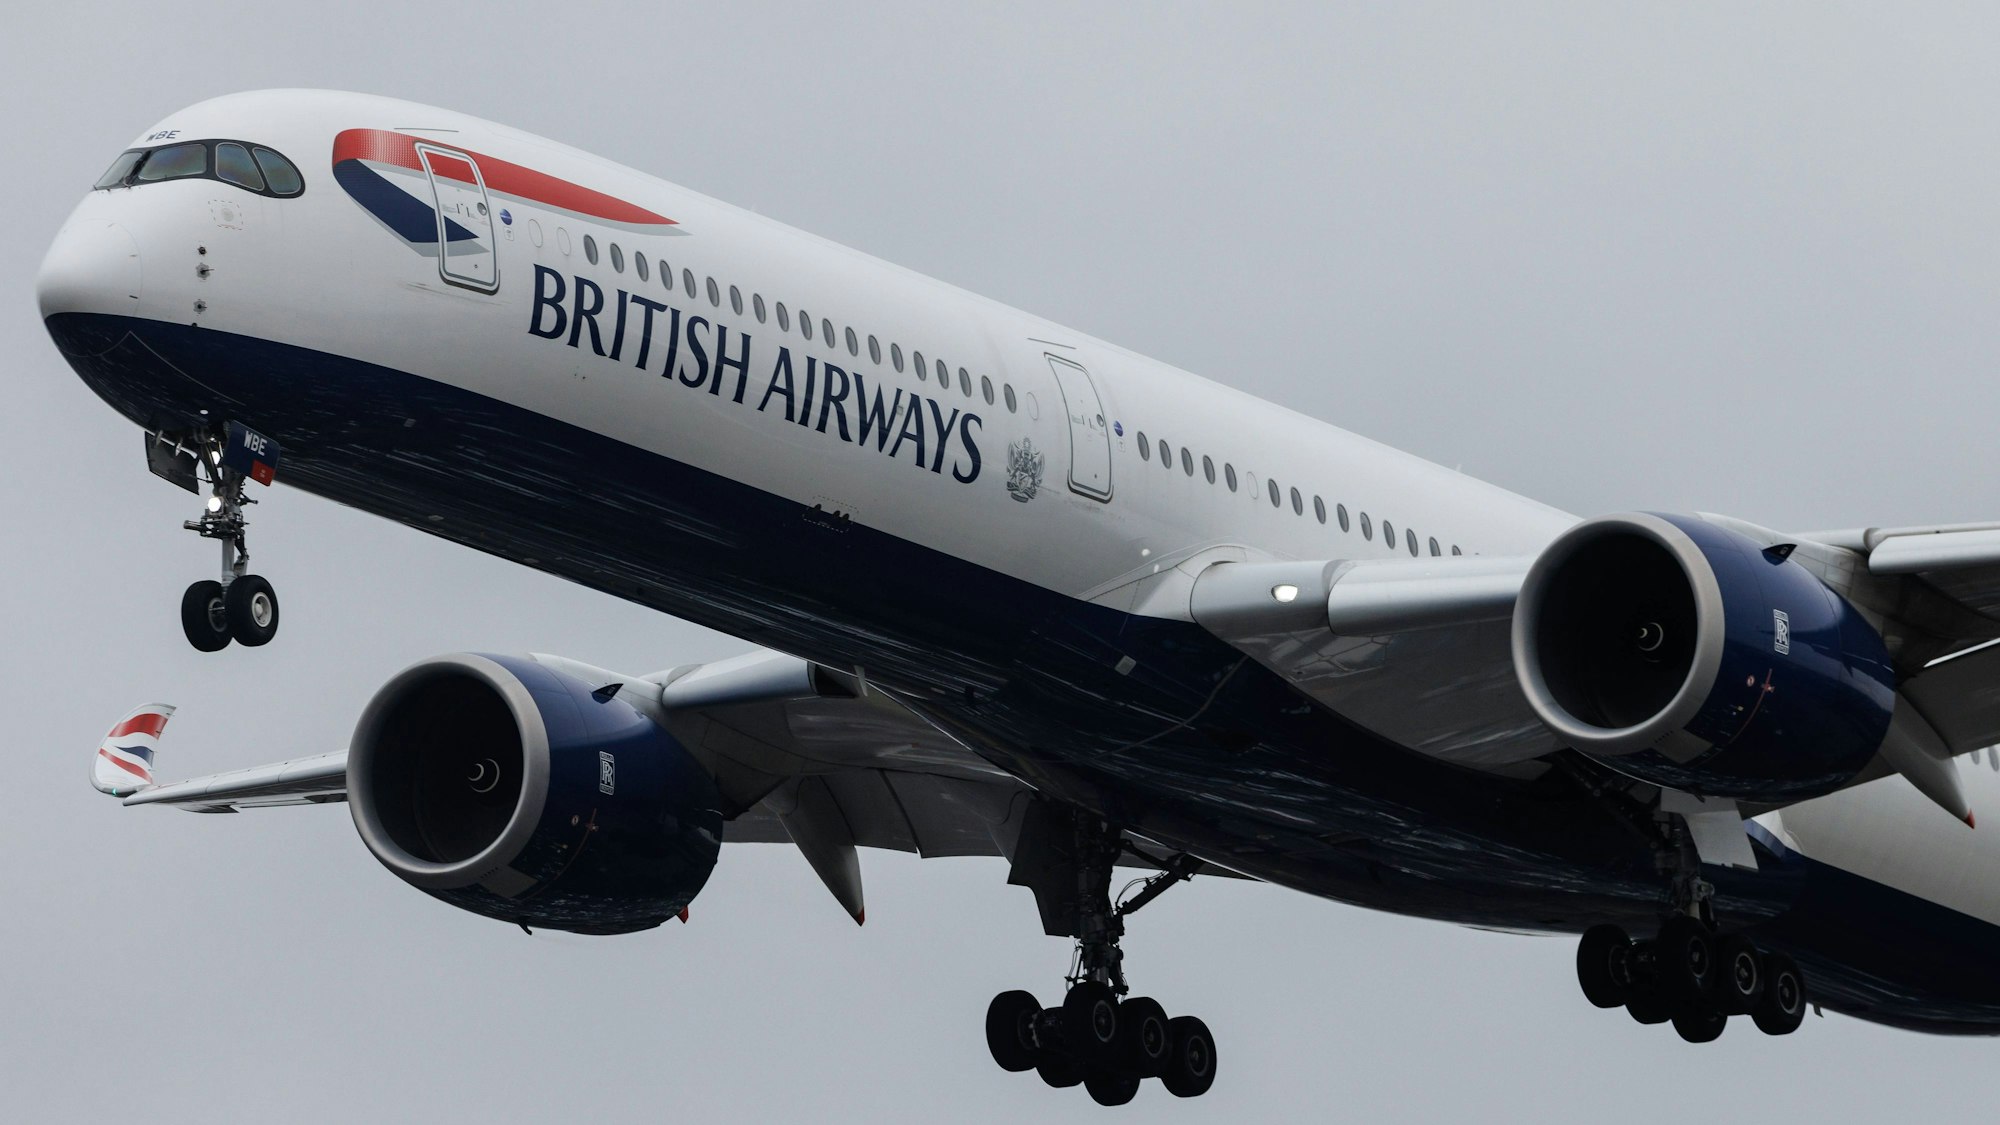 Ein Airbus A350 der britischen Fluggesellschaft British Airways ist mit ausgefahrenem Fahrwerk am Himmel zu sehen. Die Maschine ist blau-weiß-rot markiert.